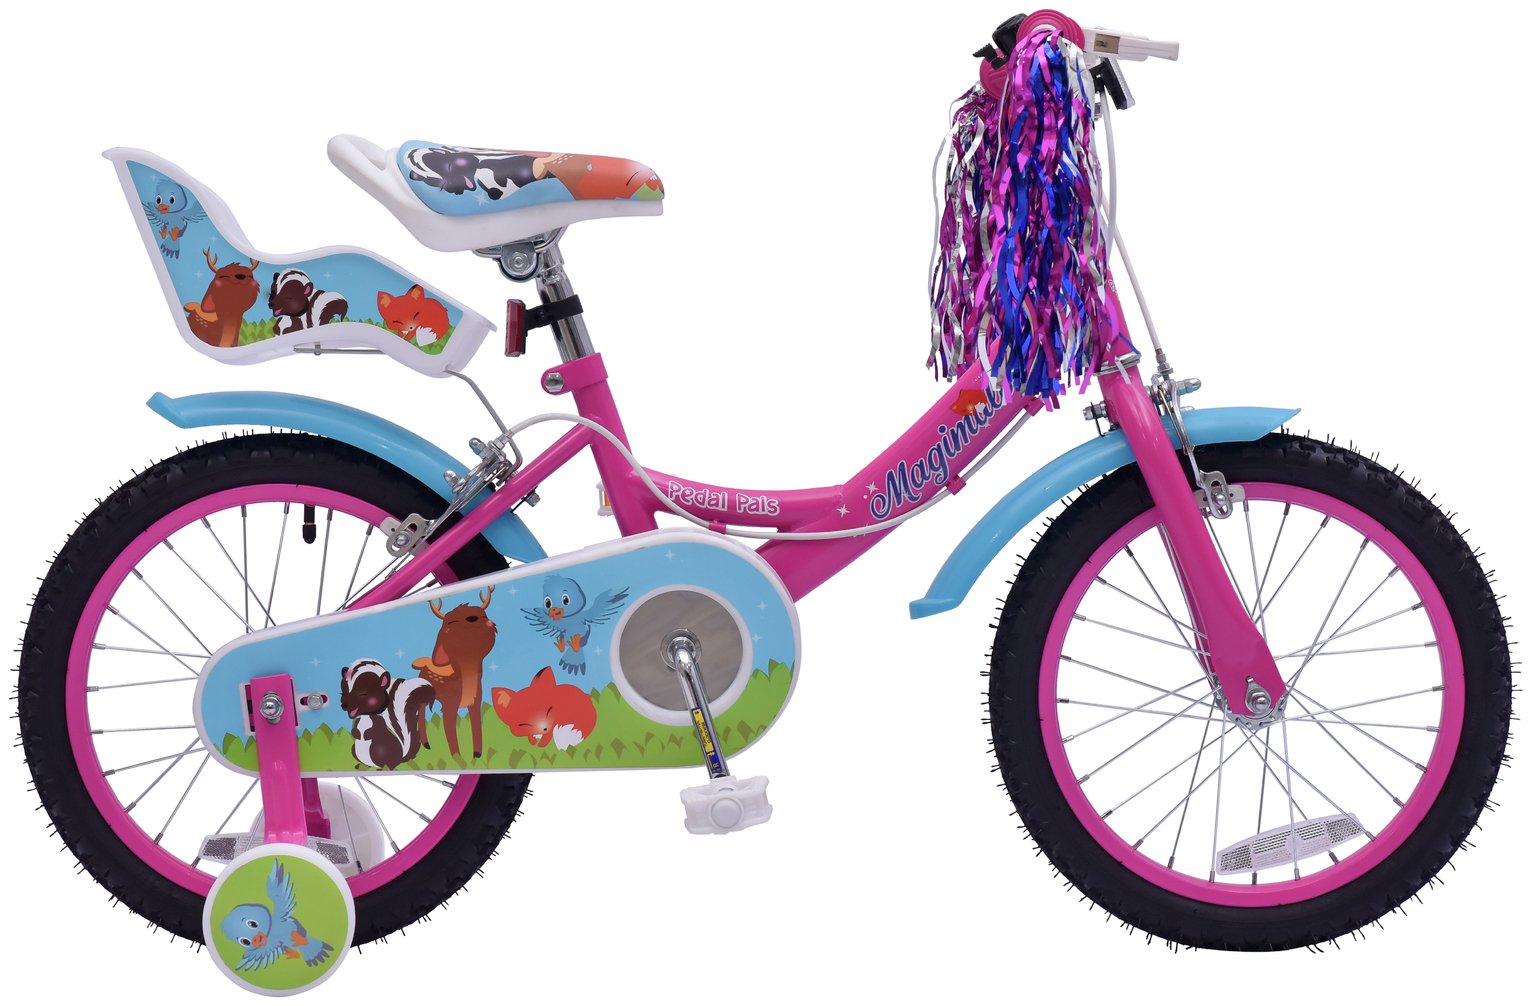 Pedal Pals Girls Magimals 16 Inch Wheel Size Steel Bike